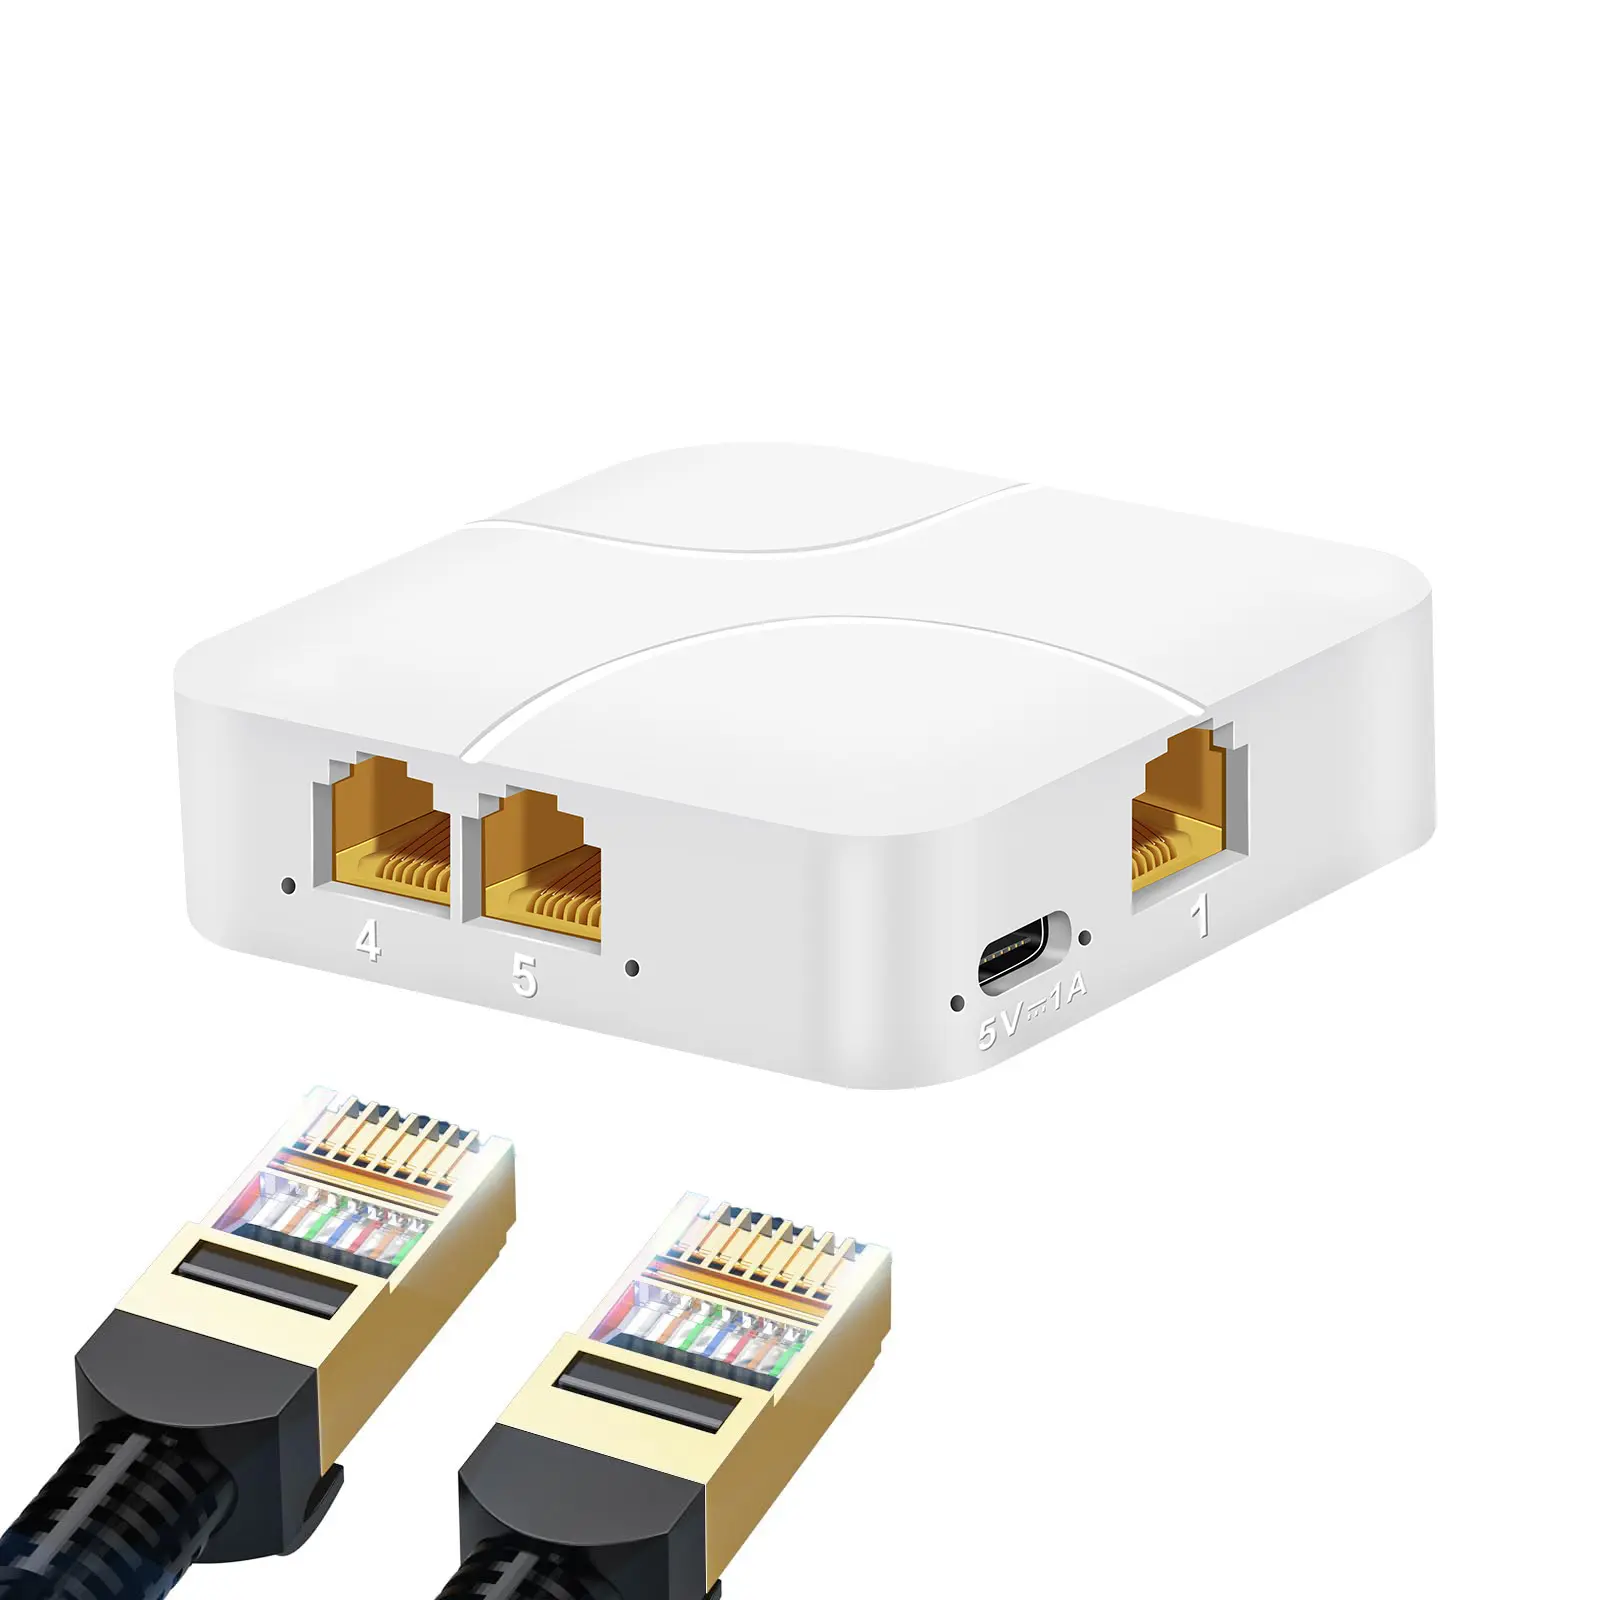 Network Splitter 1 In 4 Out High Speed 1000Mbps Gigabit RJ45 with USB Power Cable LAN Splitter Ethernet Network Splitter